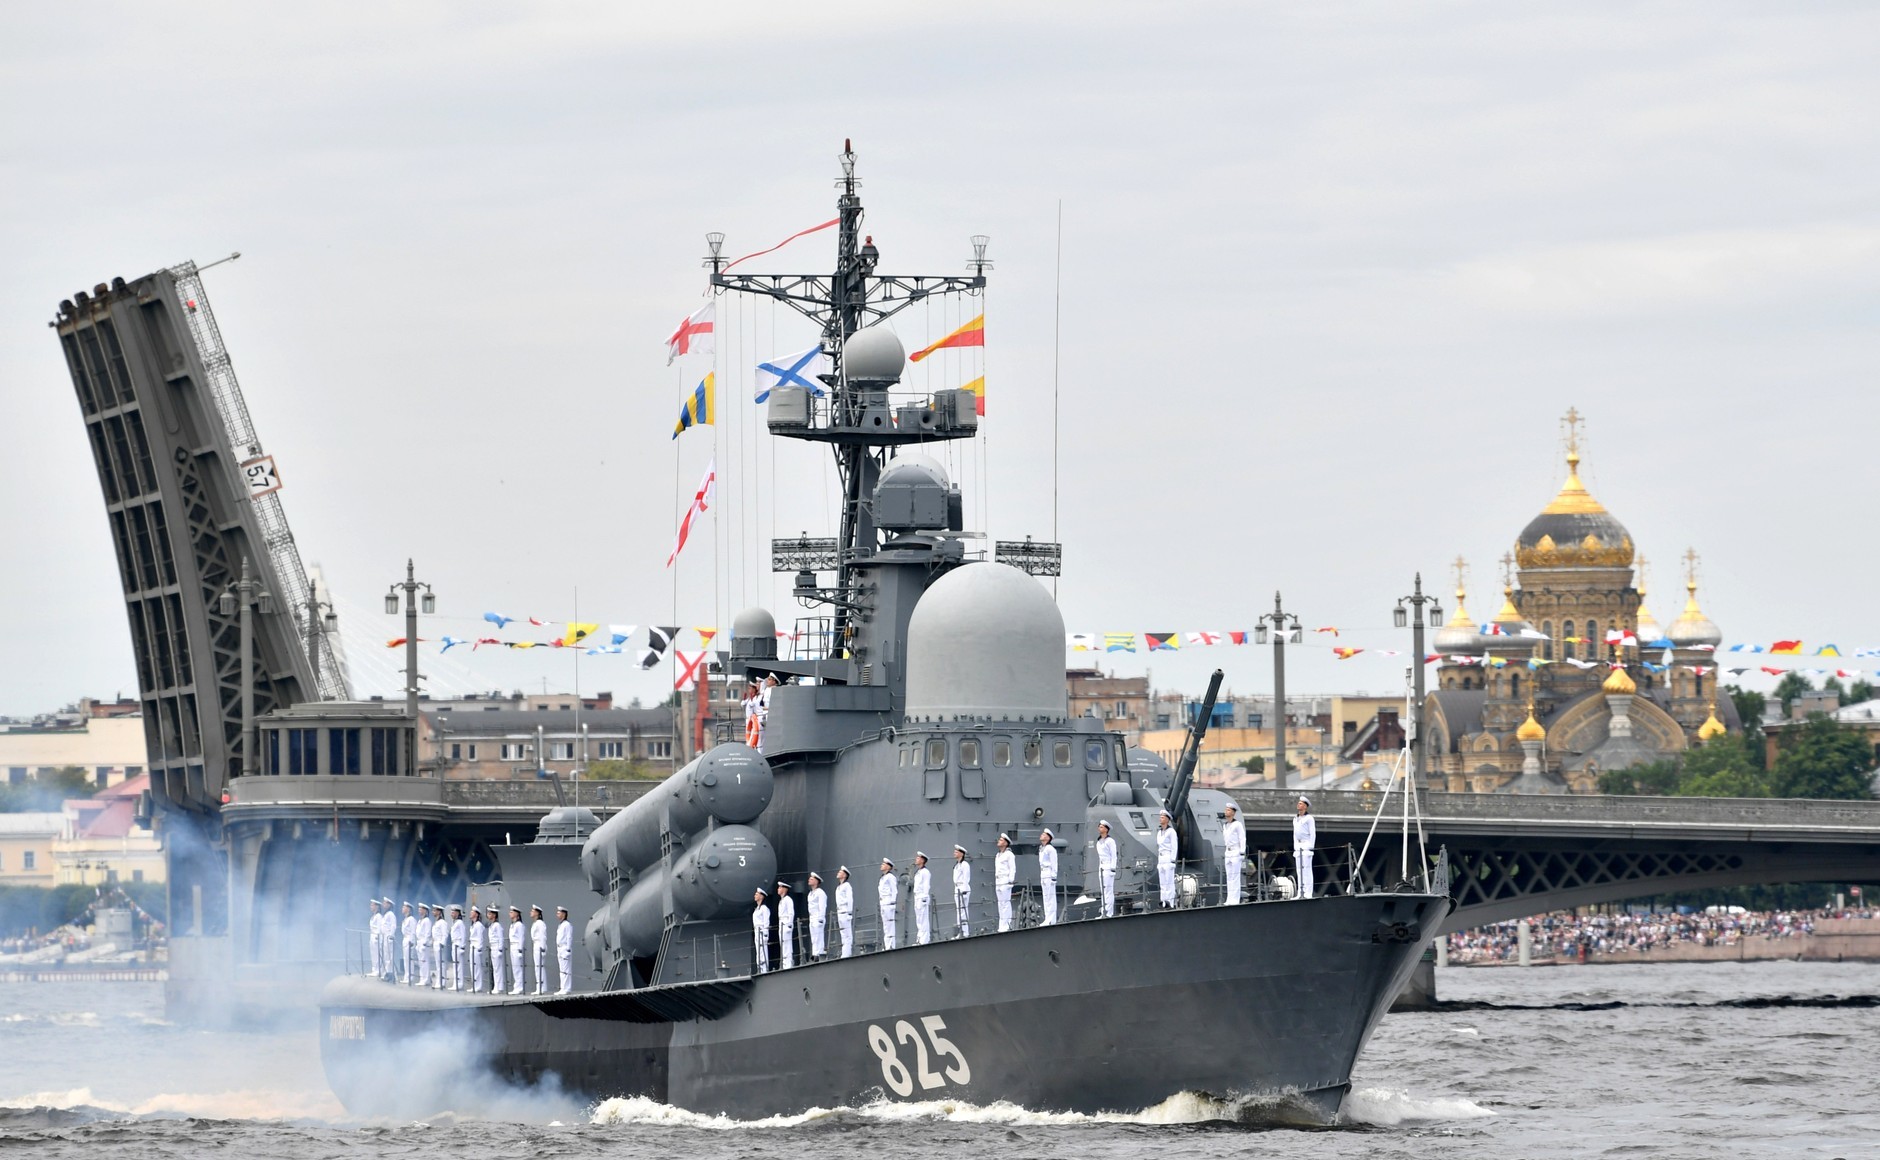 Toàn cảnh lễ duyệt binh kỷ niệm 325 năm Ngày Hải quân Nga